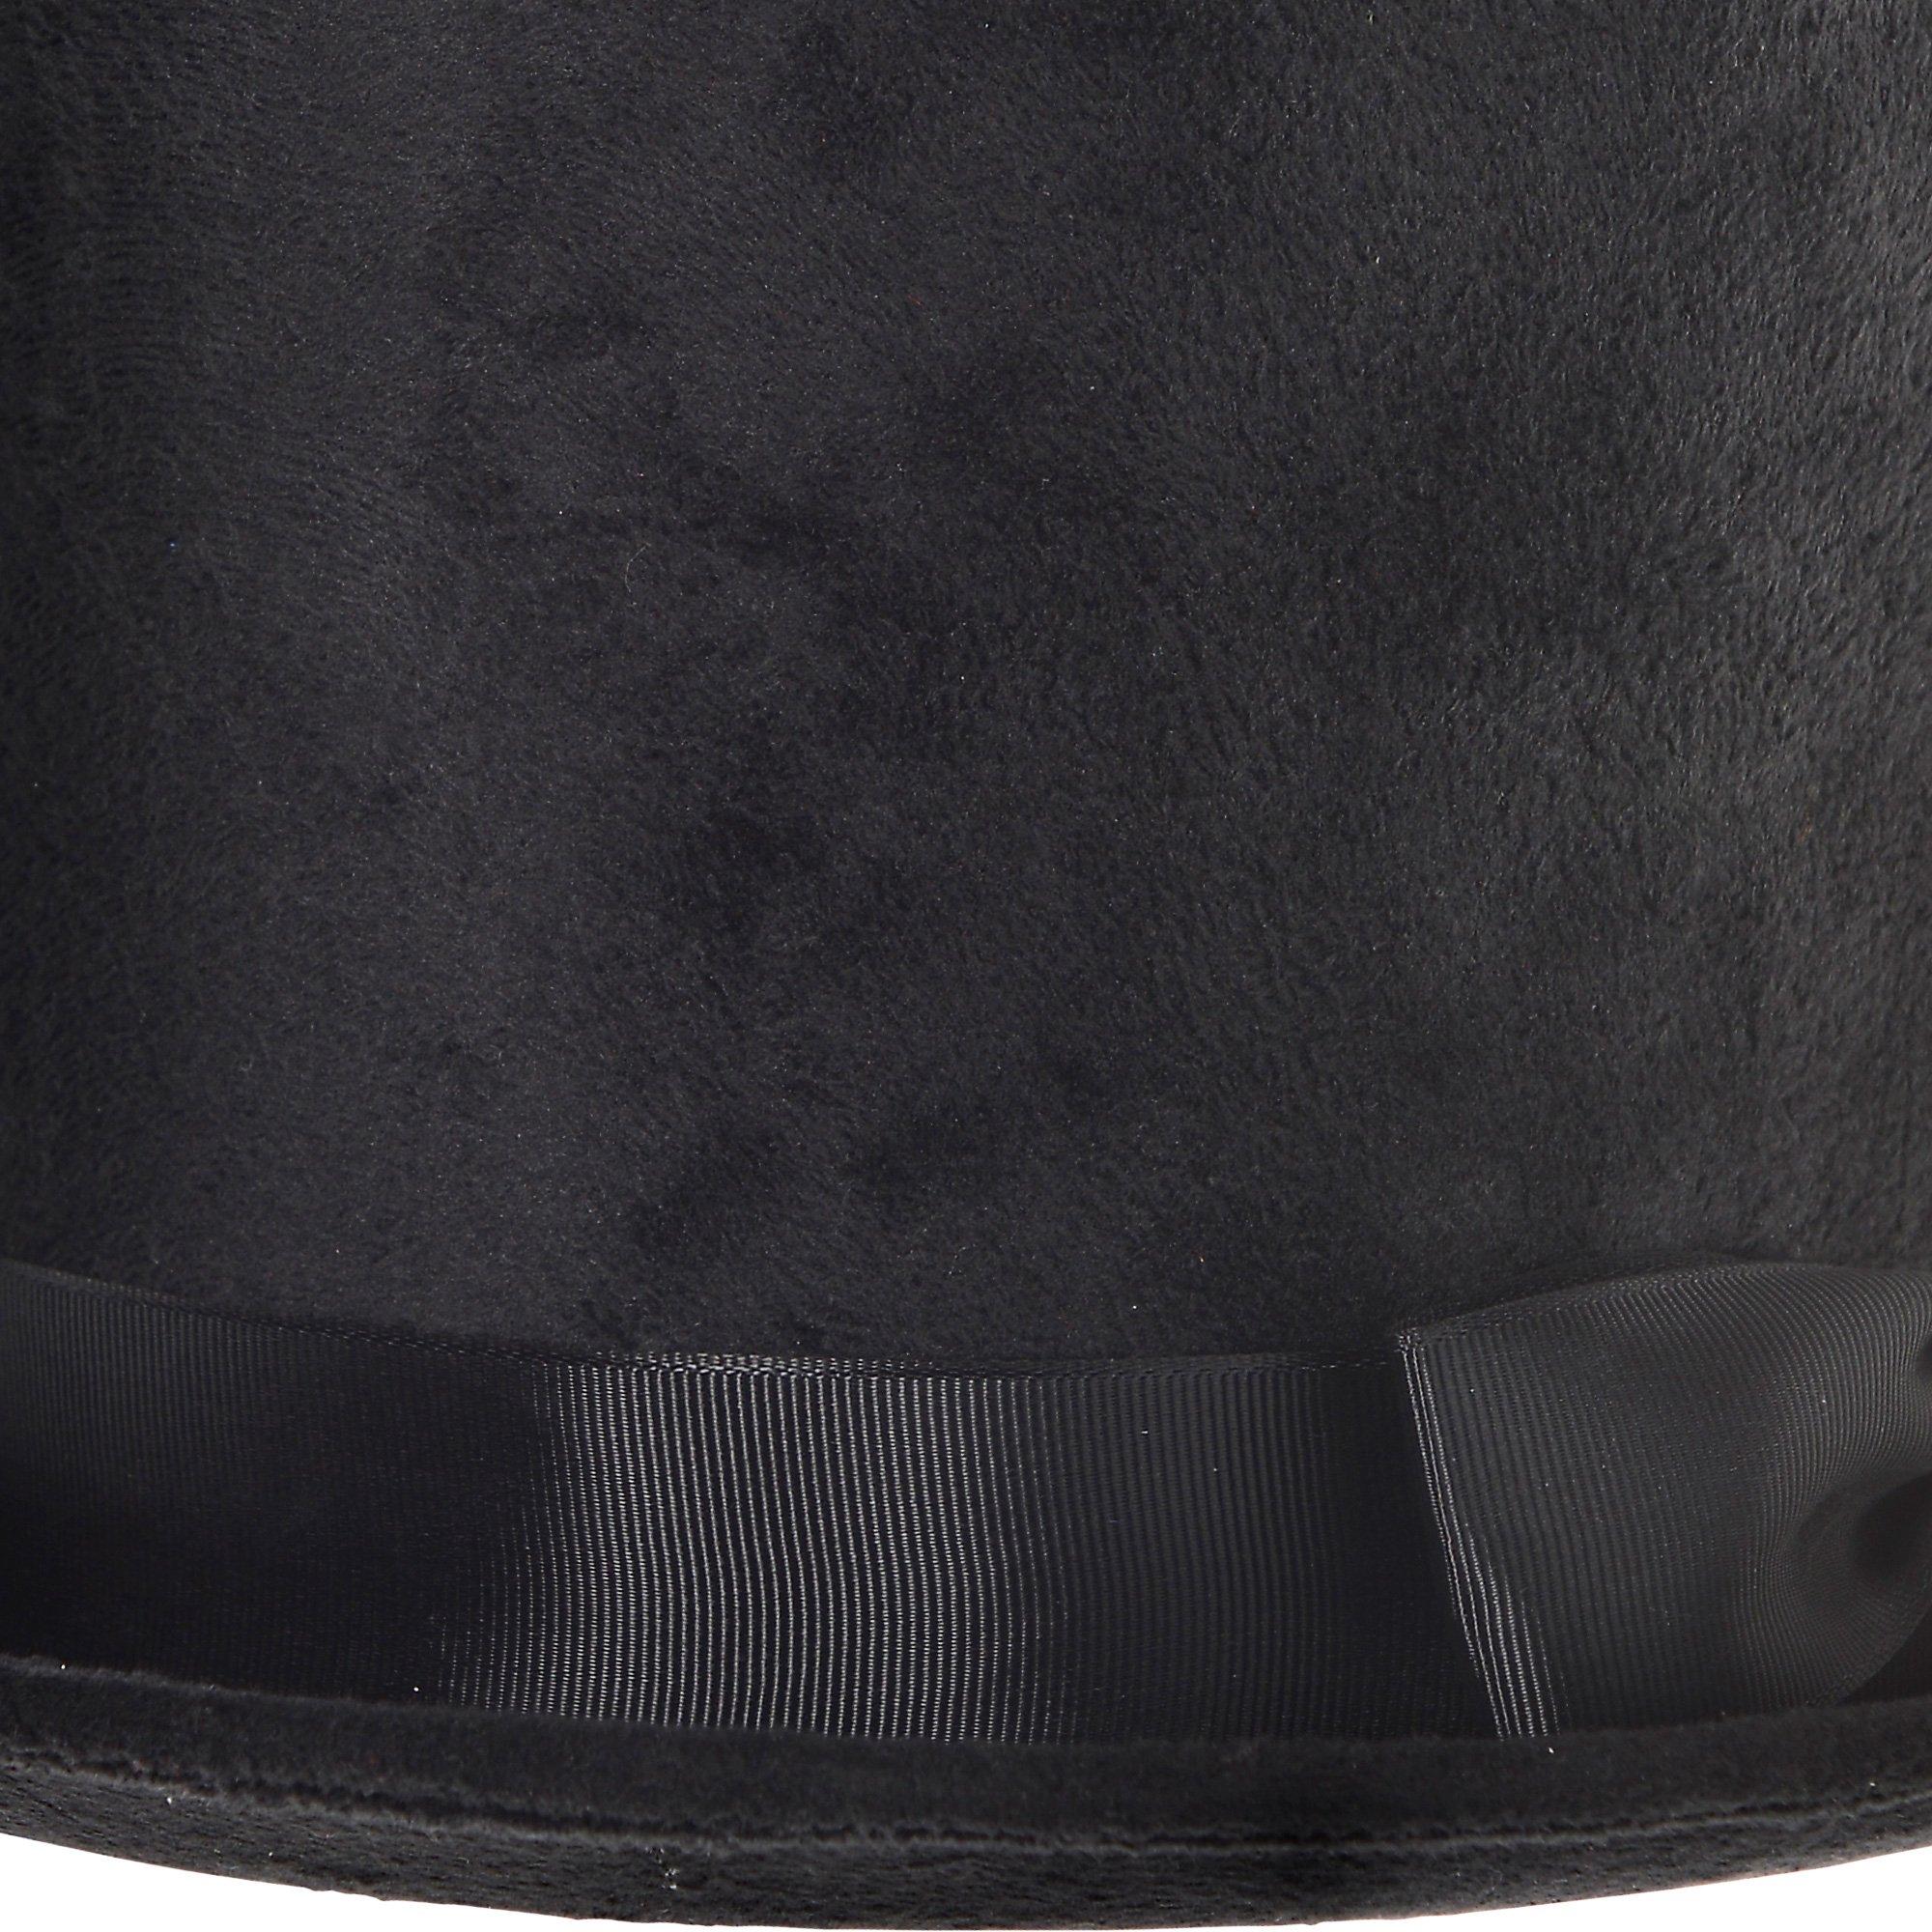 Victorian Black Top Hat Deluxe